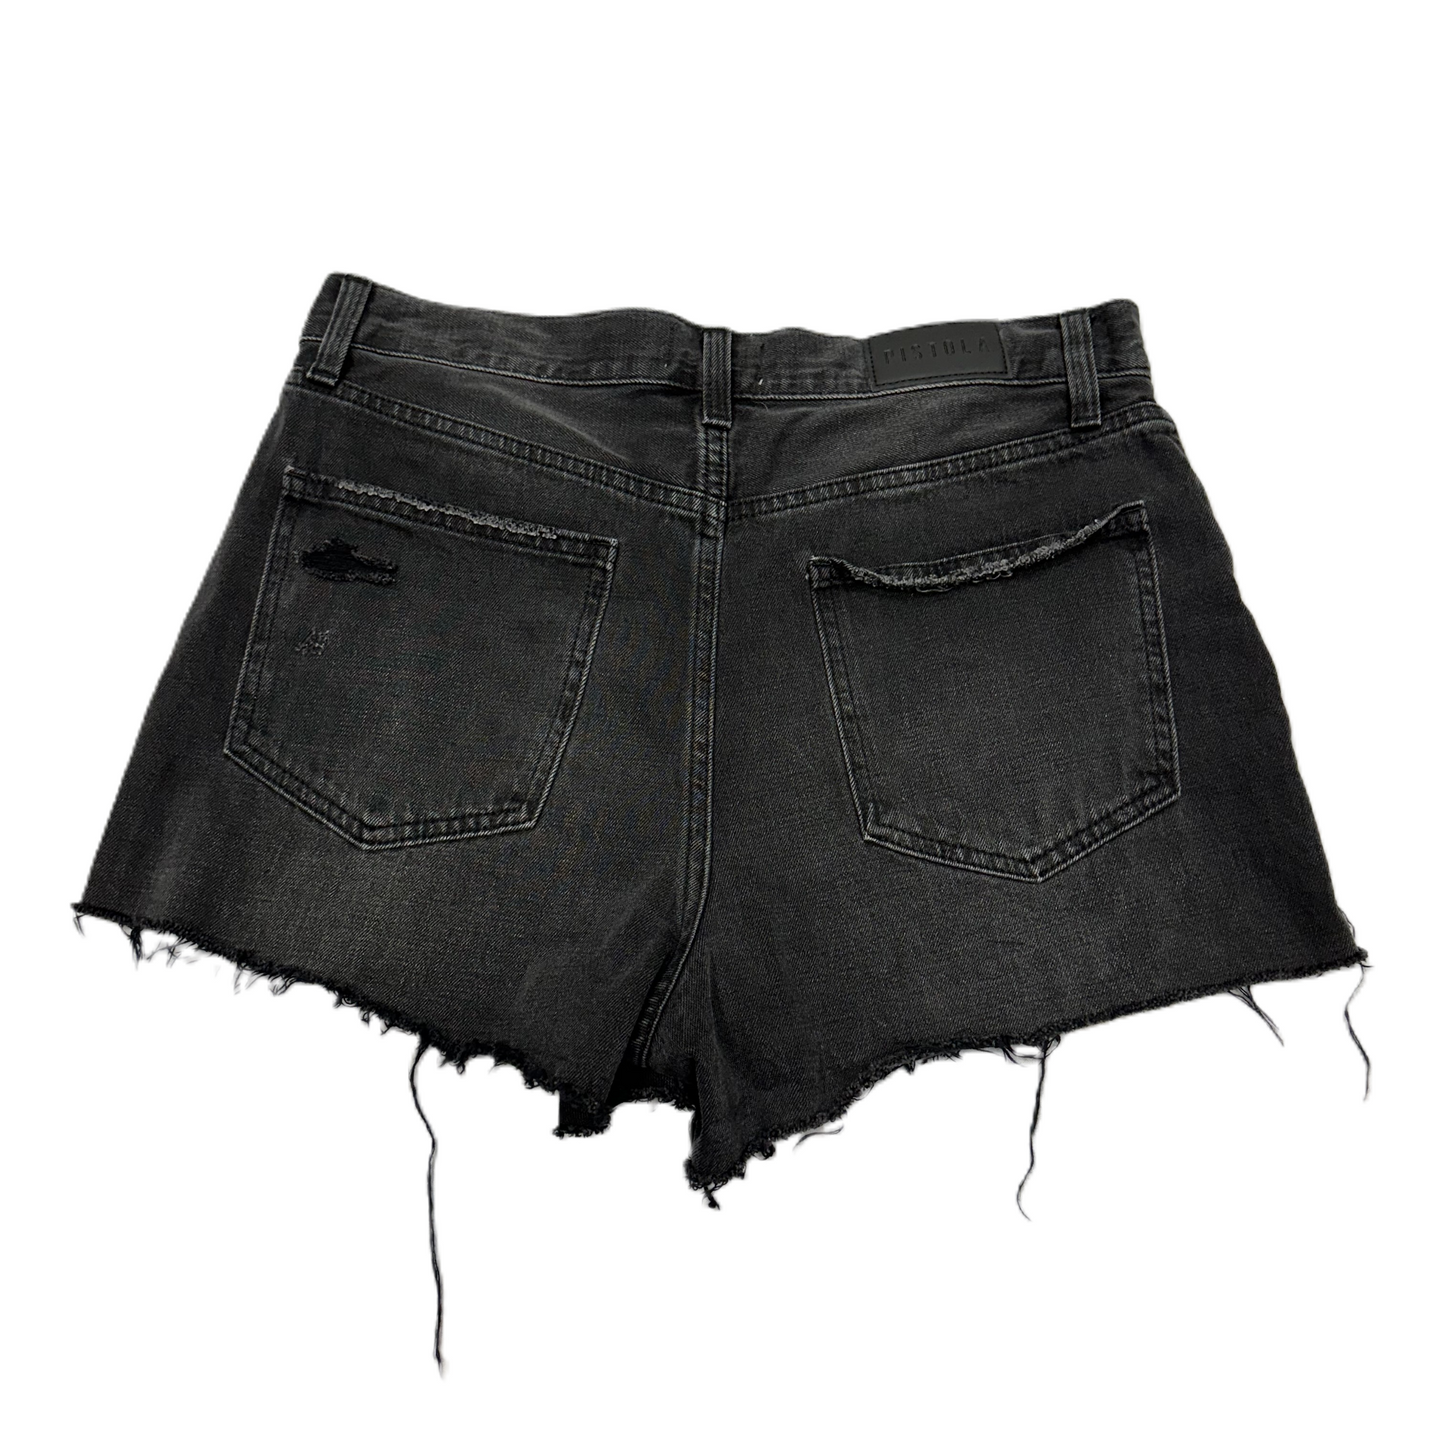 Black Denim Shorts By Pistola, Size: 6